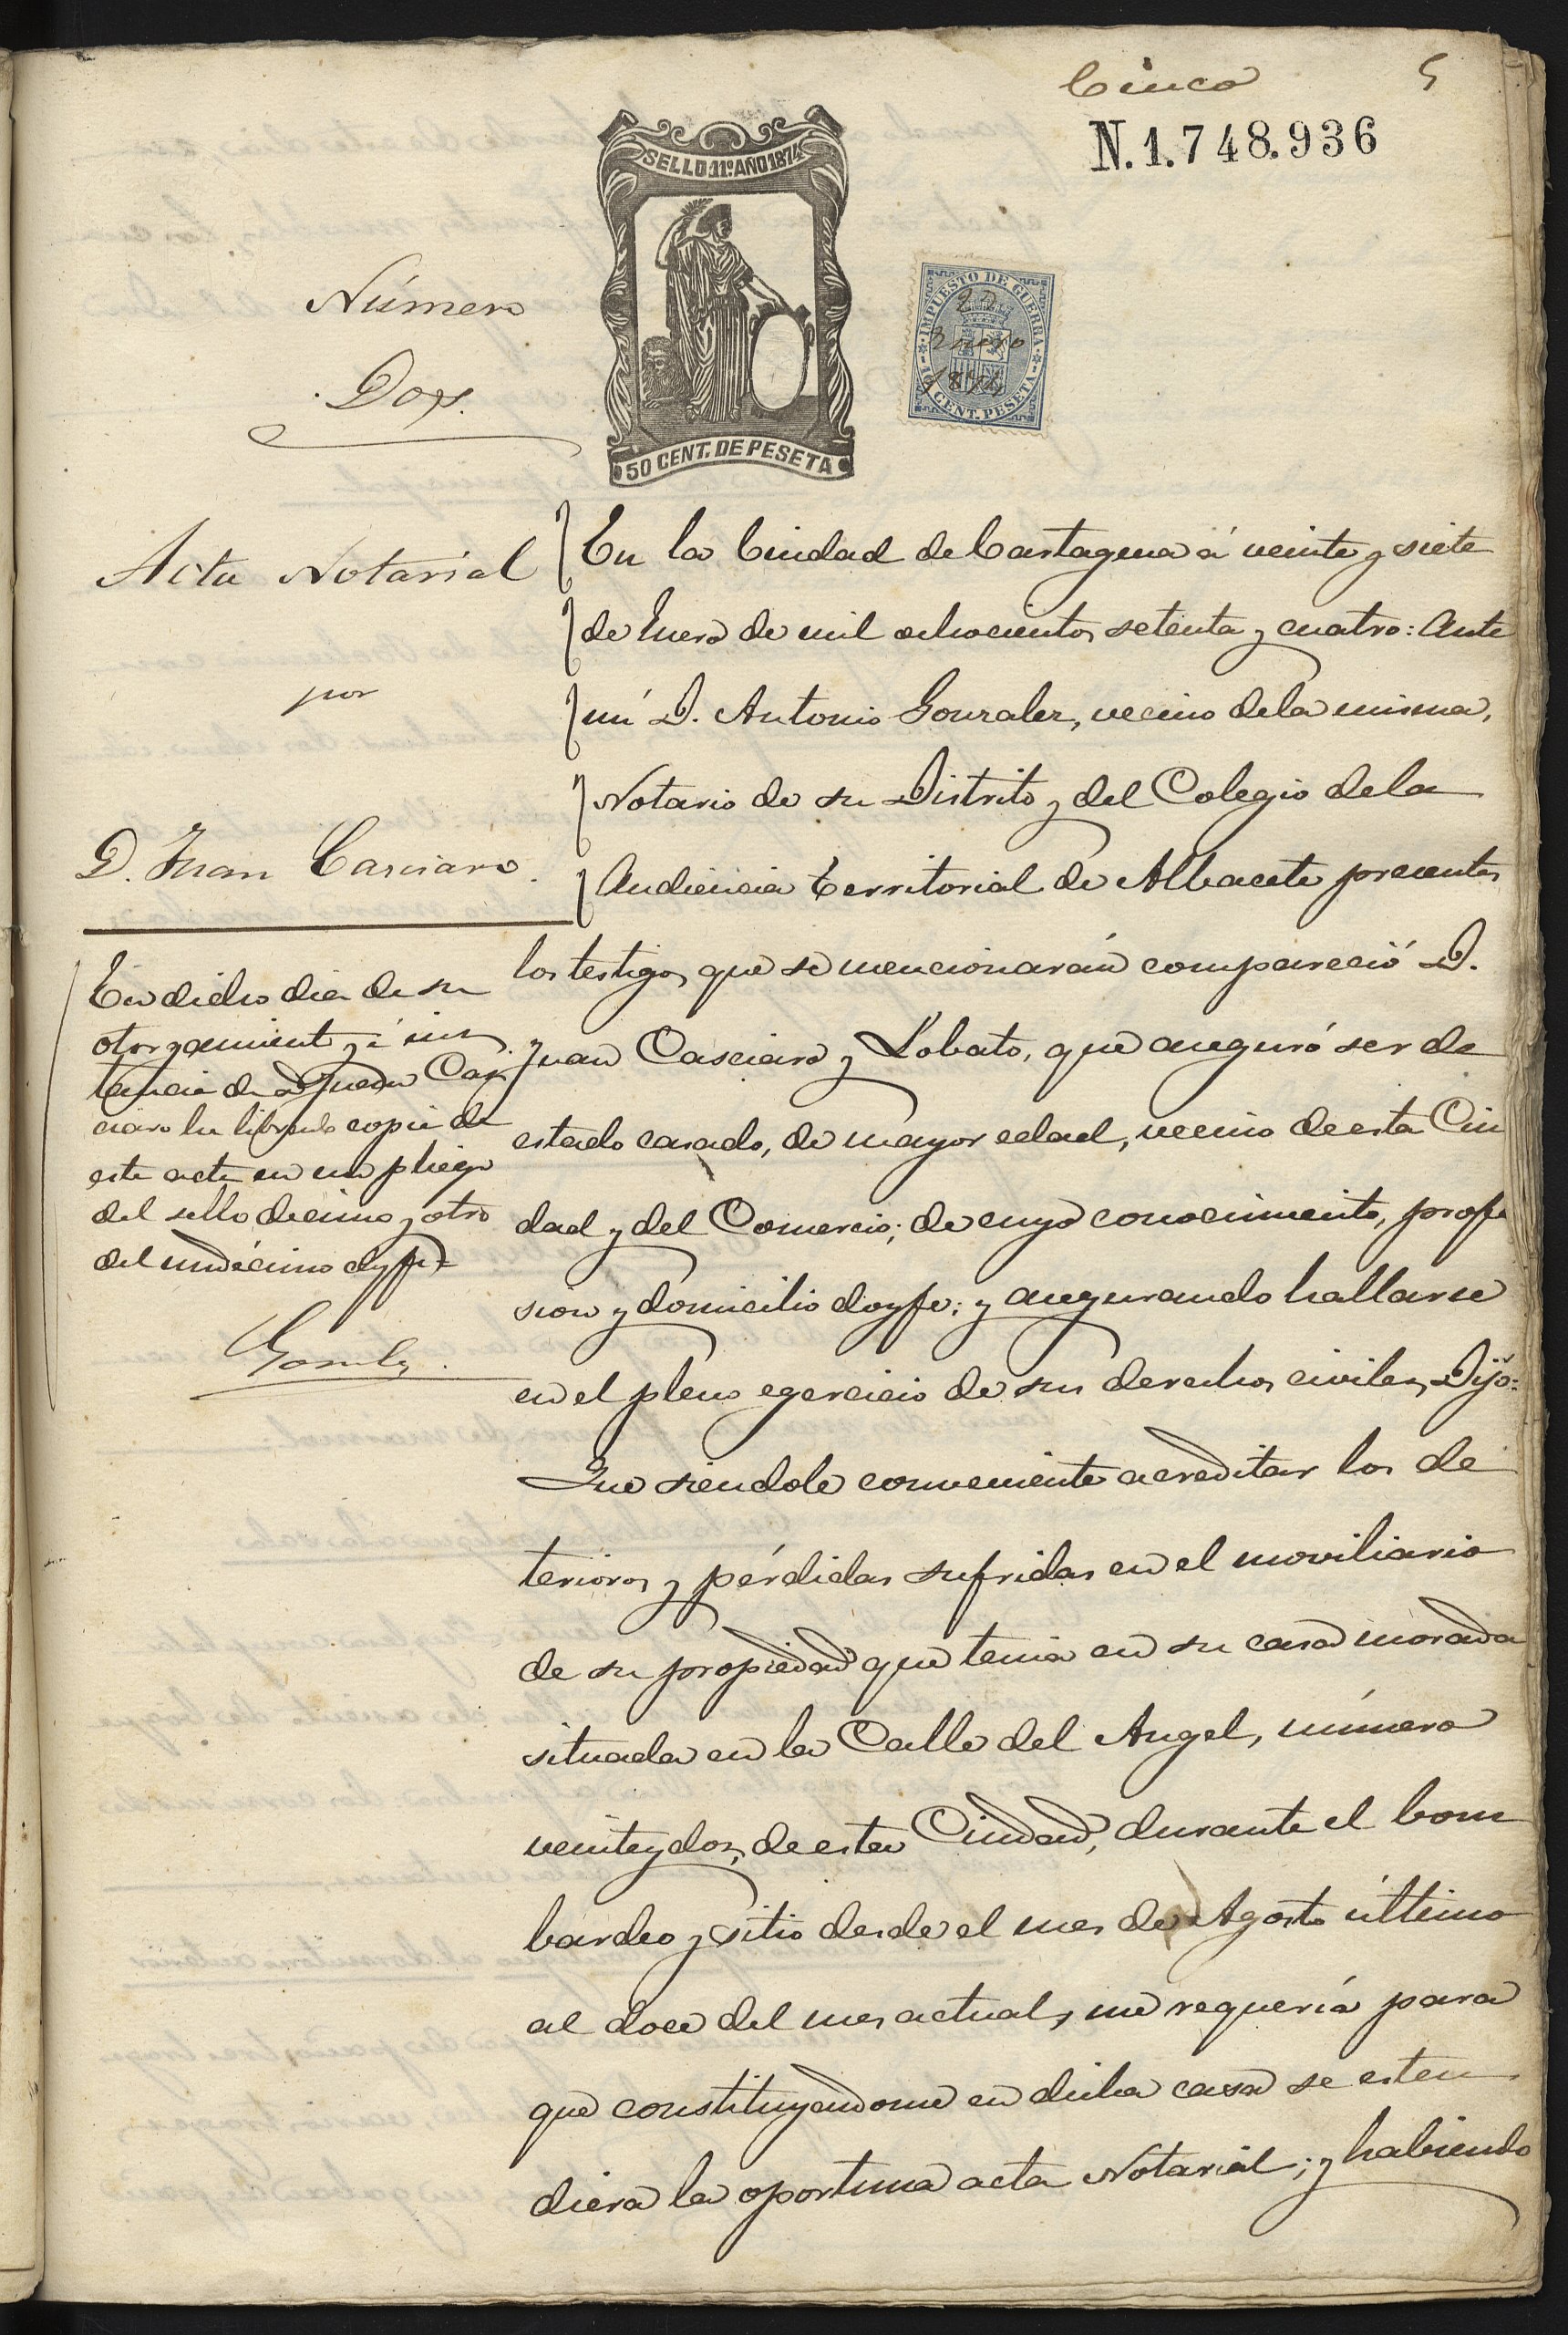 Acta notarial otorgada por Juan Casciaro para acreditar los deteriores y pérdidas sufridos en el mobiliario de su casa en Cartagena durante el bombardeo y sitio desde mes de agosto de 1873 hasta el 12 de enero de 1874.